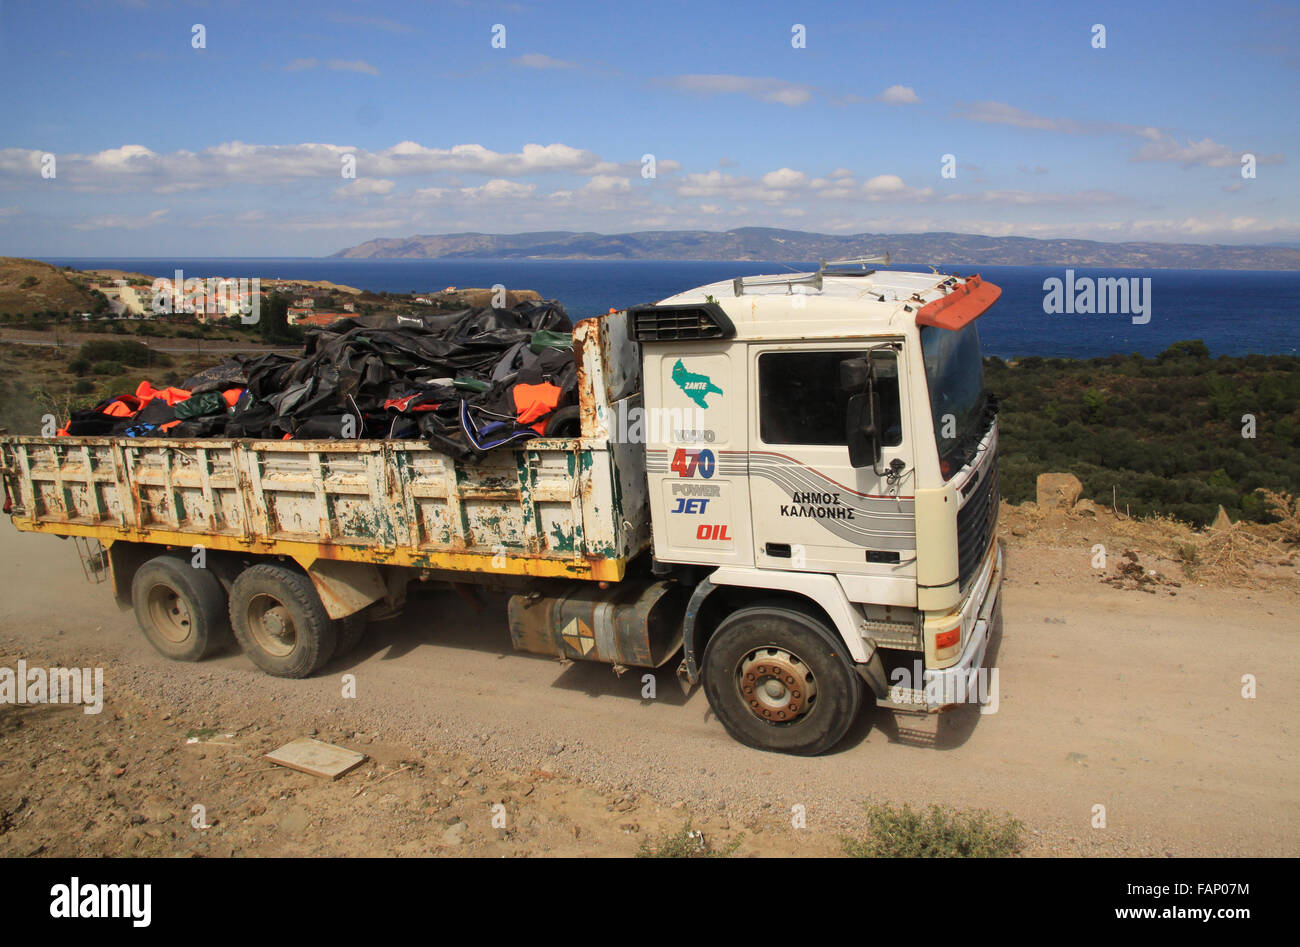 Le nettoyage des ordures et des ouvriers n'a pas tenu compte des gilets de sauvetage après l'arrivée des réfugiés demandeurs d'asile et des immigrants sur l'île de Lesbos en Grèce Banque D'Images